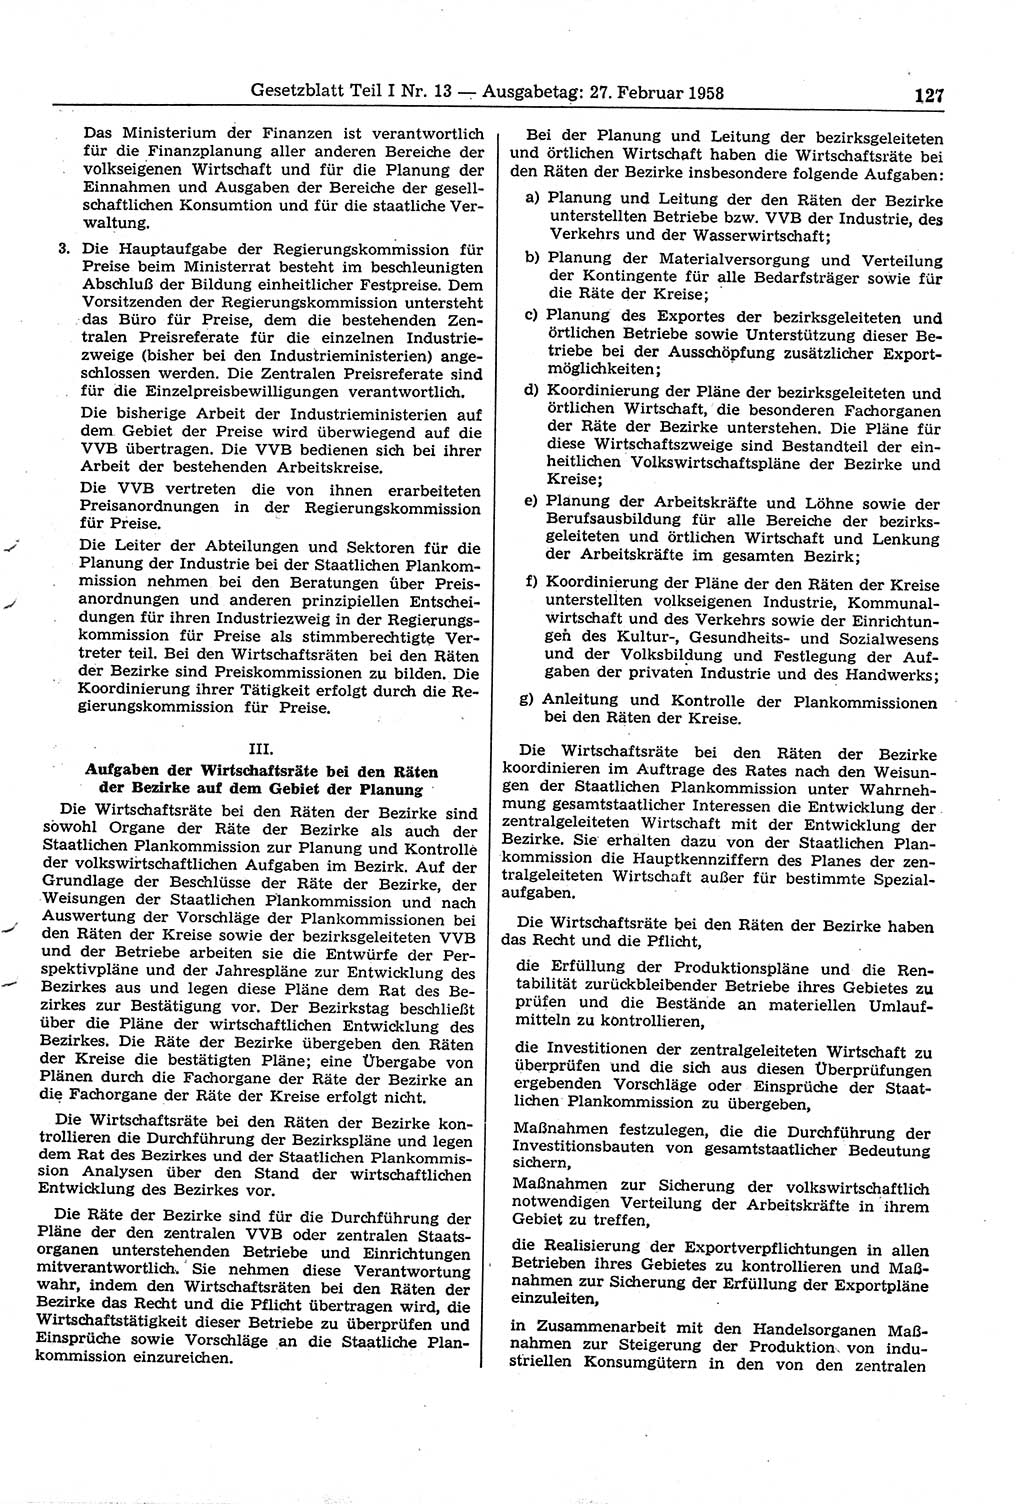 Gesetzblatt (GBl.) der Deutschen Demokratischen Republik (DDR) Teil Ⅰ 1958, Seite 127 (GBl. DDR Ⅰ 1958, S. 127)